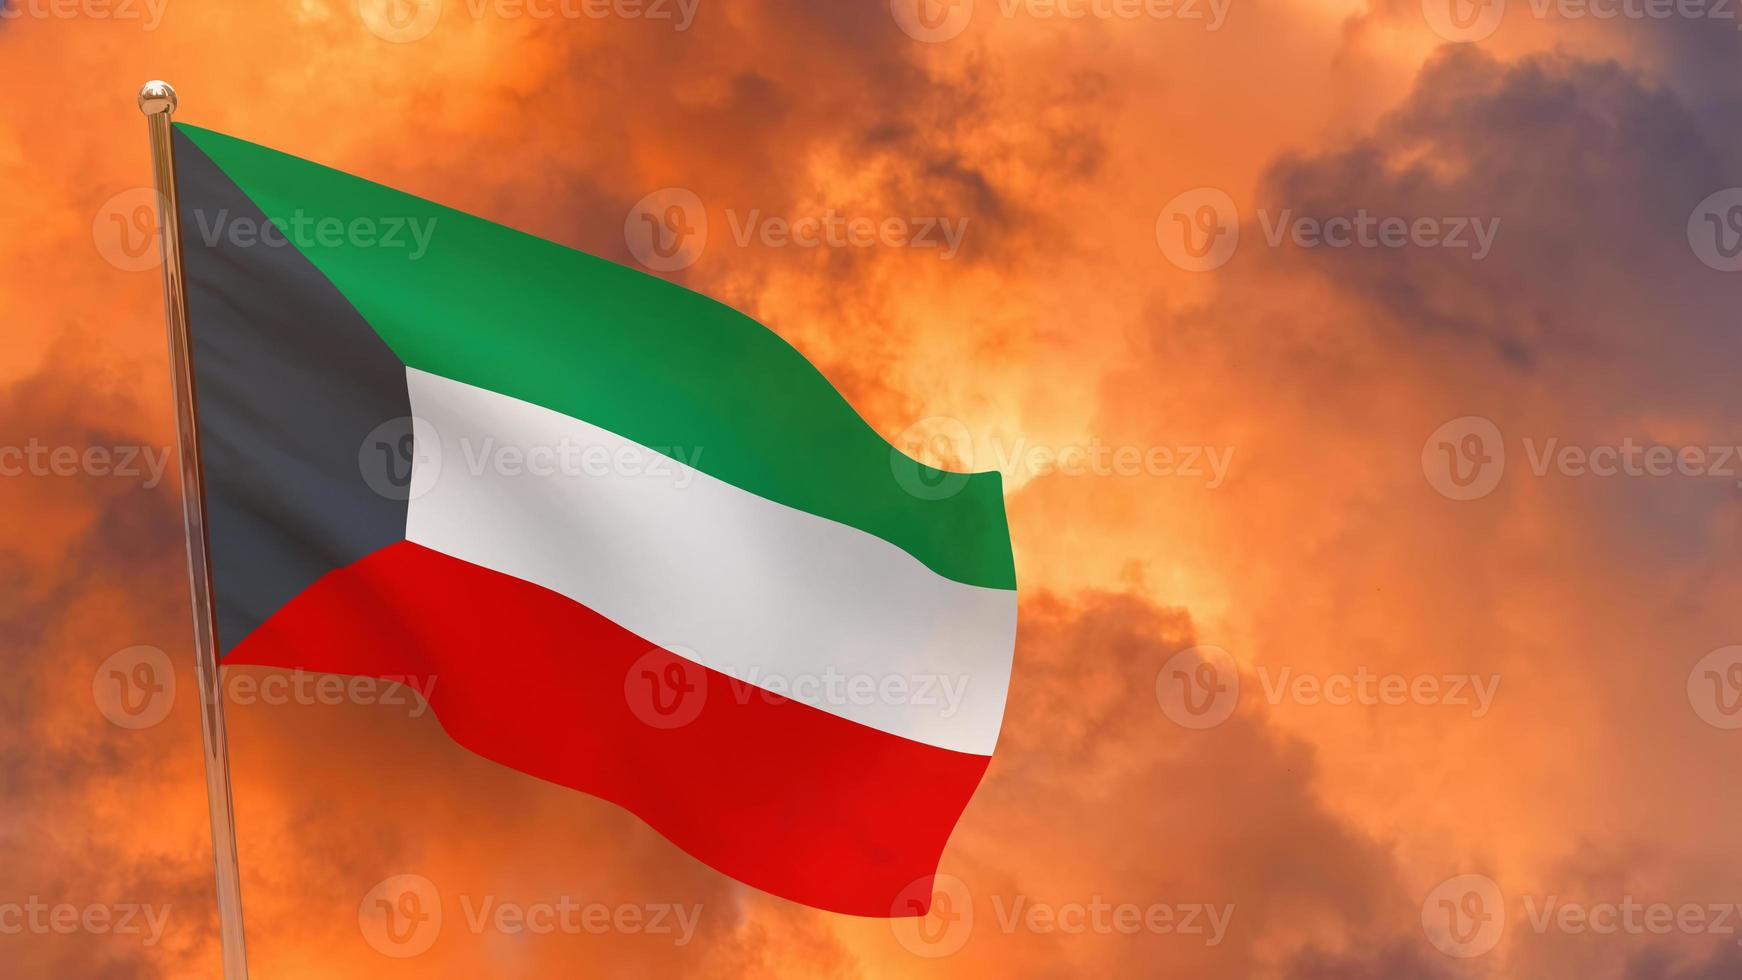 kuwait flag on pole photo